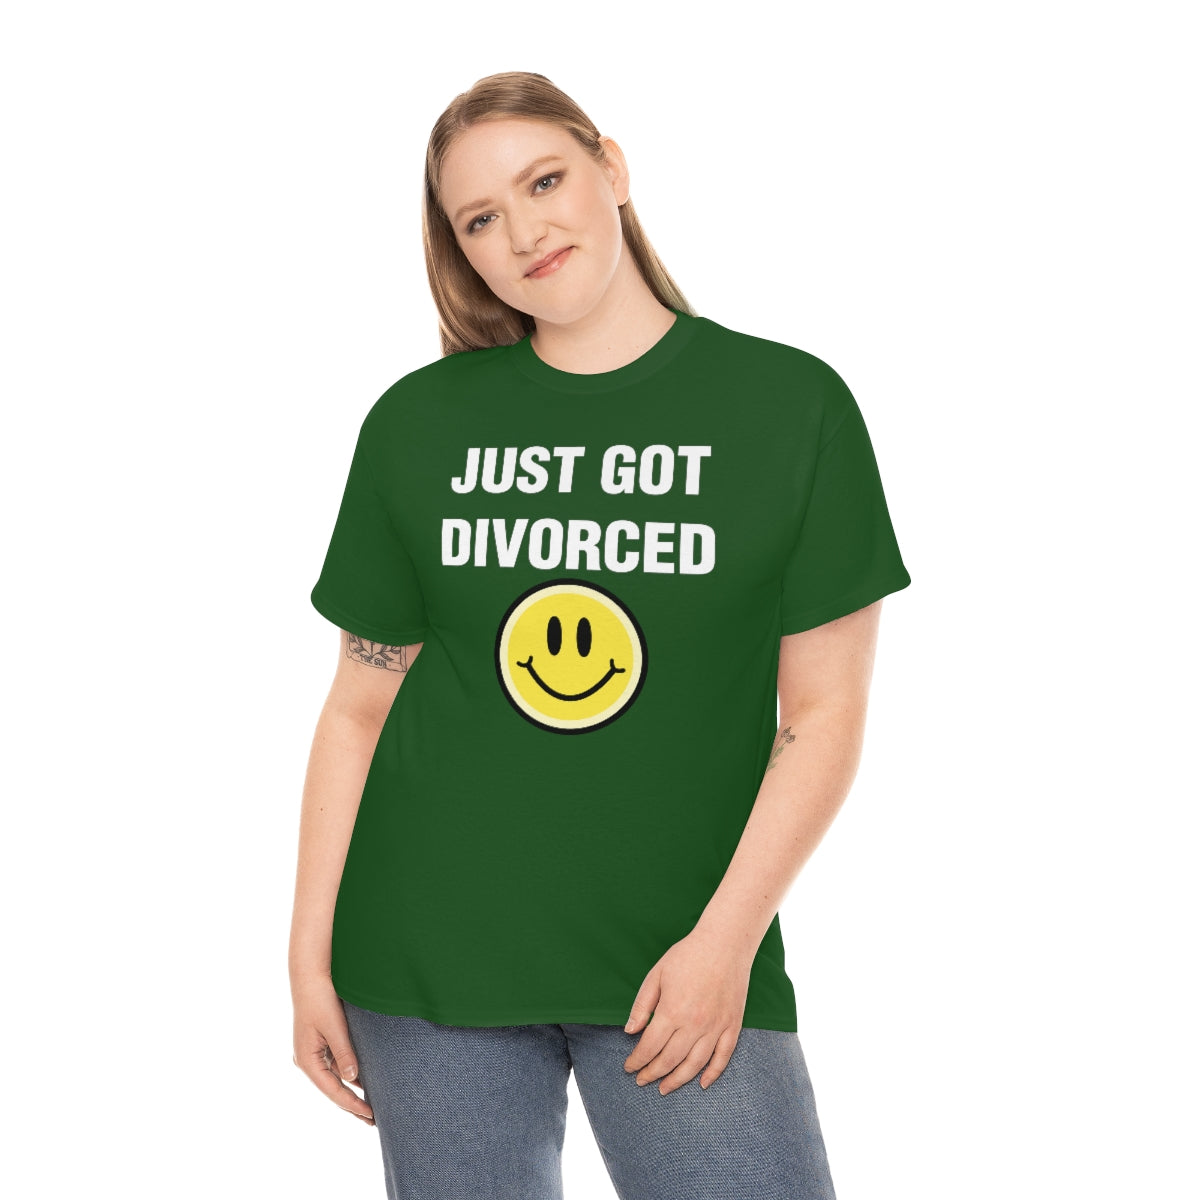 JUST GOT DIVORCED TEE